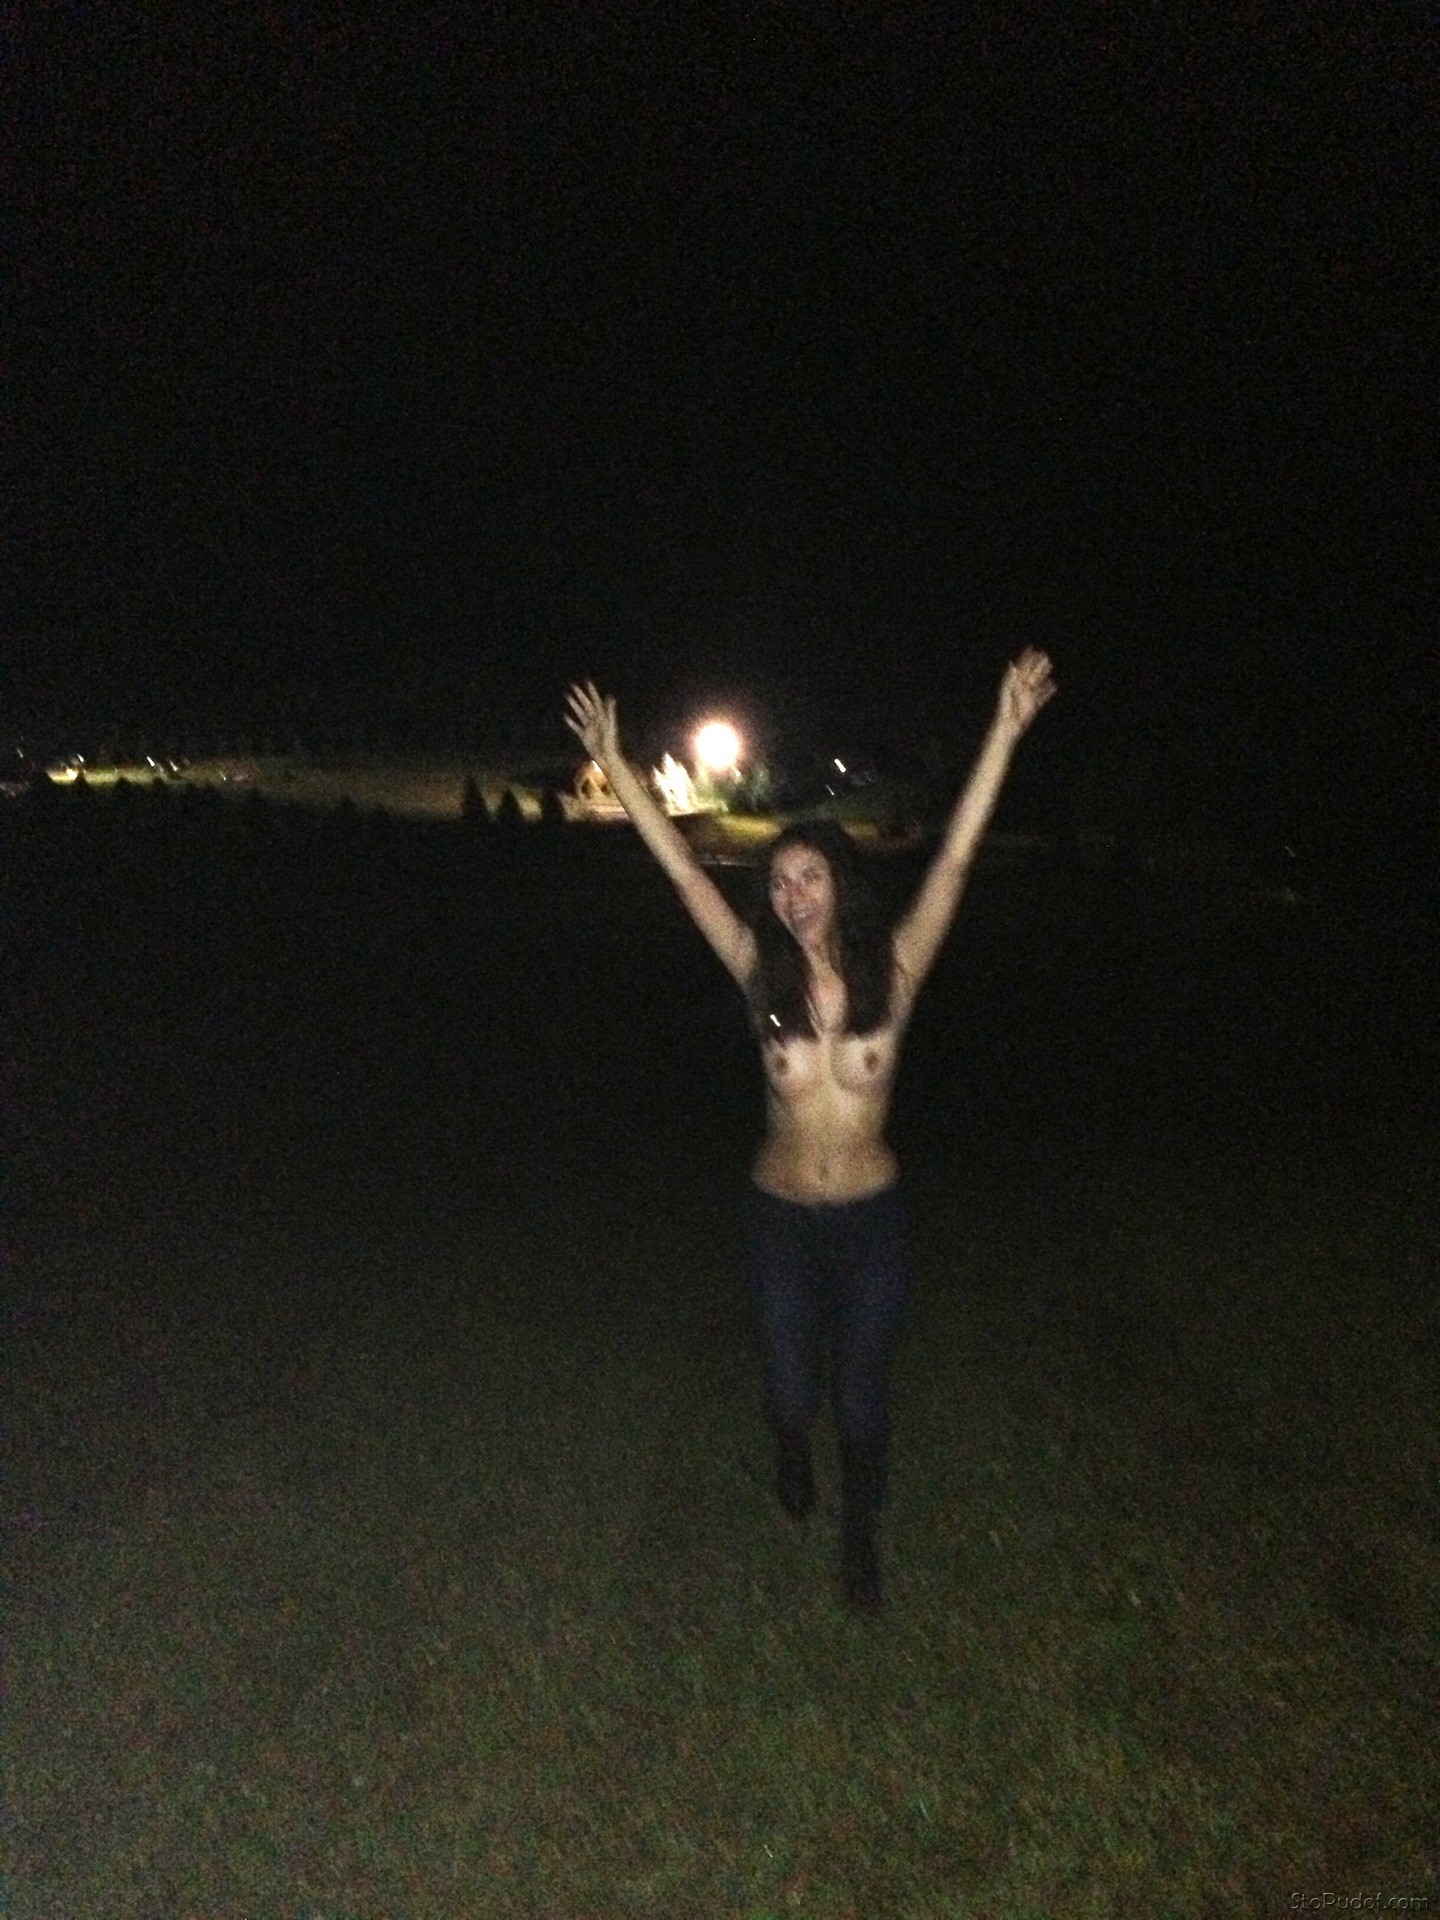 Victoria Justice leaked nude image - UkPhotoSafari